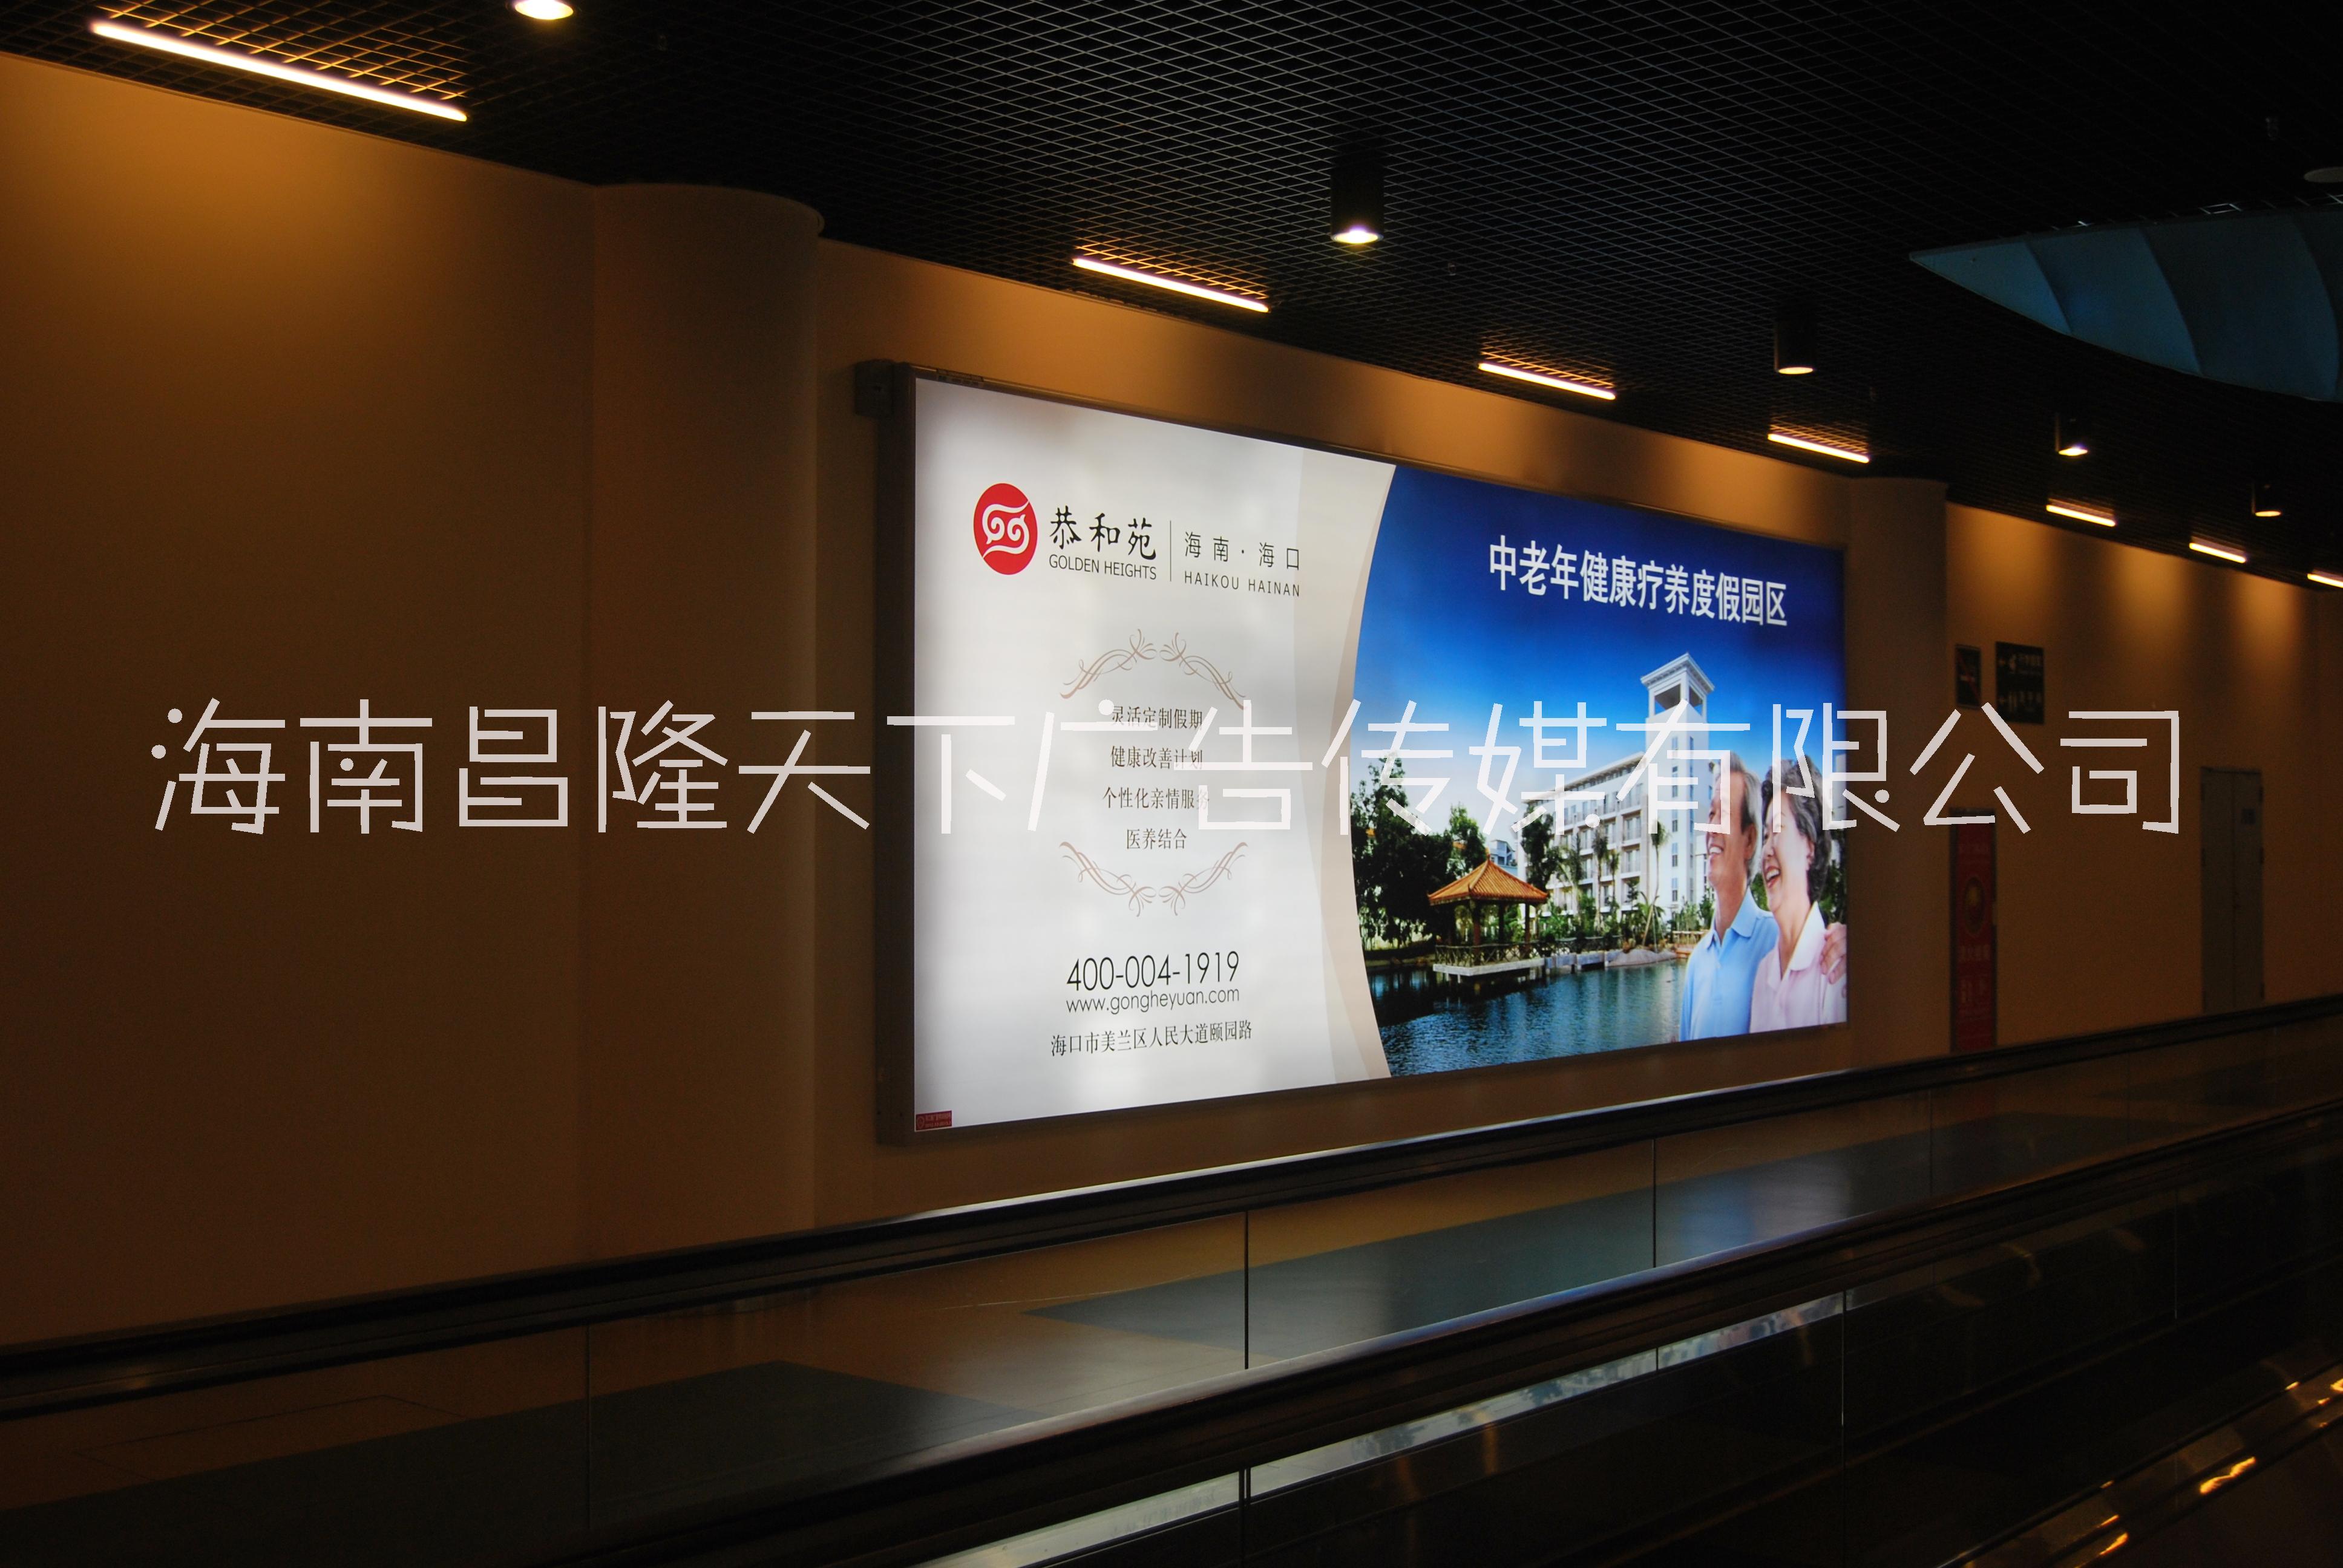 海南几大机场灯箱广告牌媒体 海南海口三亚博鳌机场灯箱和LED